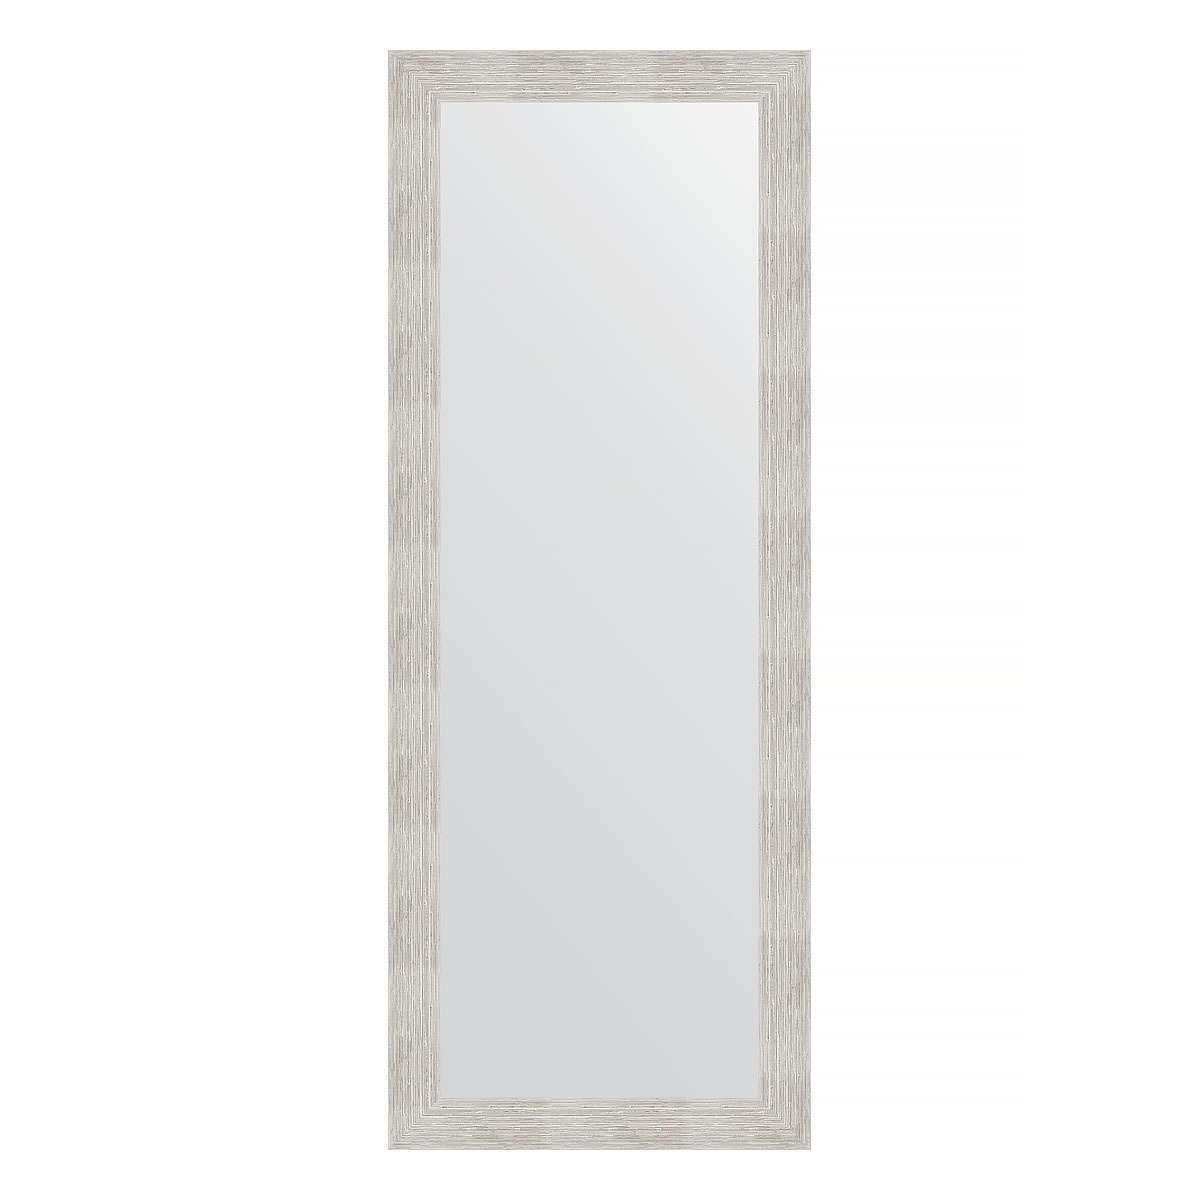 Зеркало в багетной раме Evoform серебряный дождь 70 мм 56х146 см зеркало в багетной раме evoform орех 65 мм 56х146 см